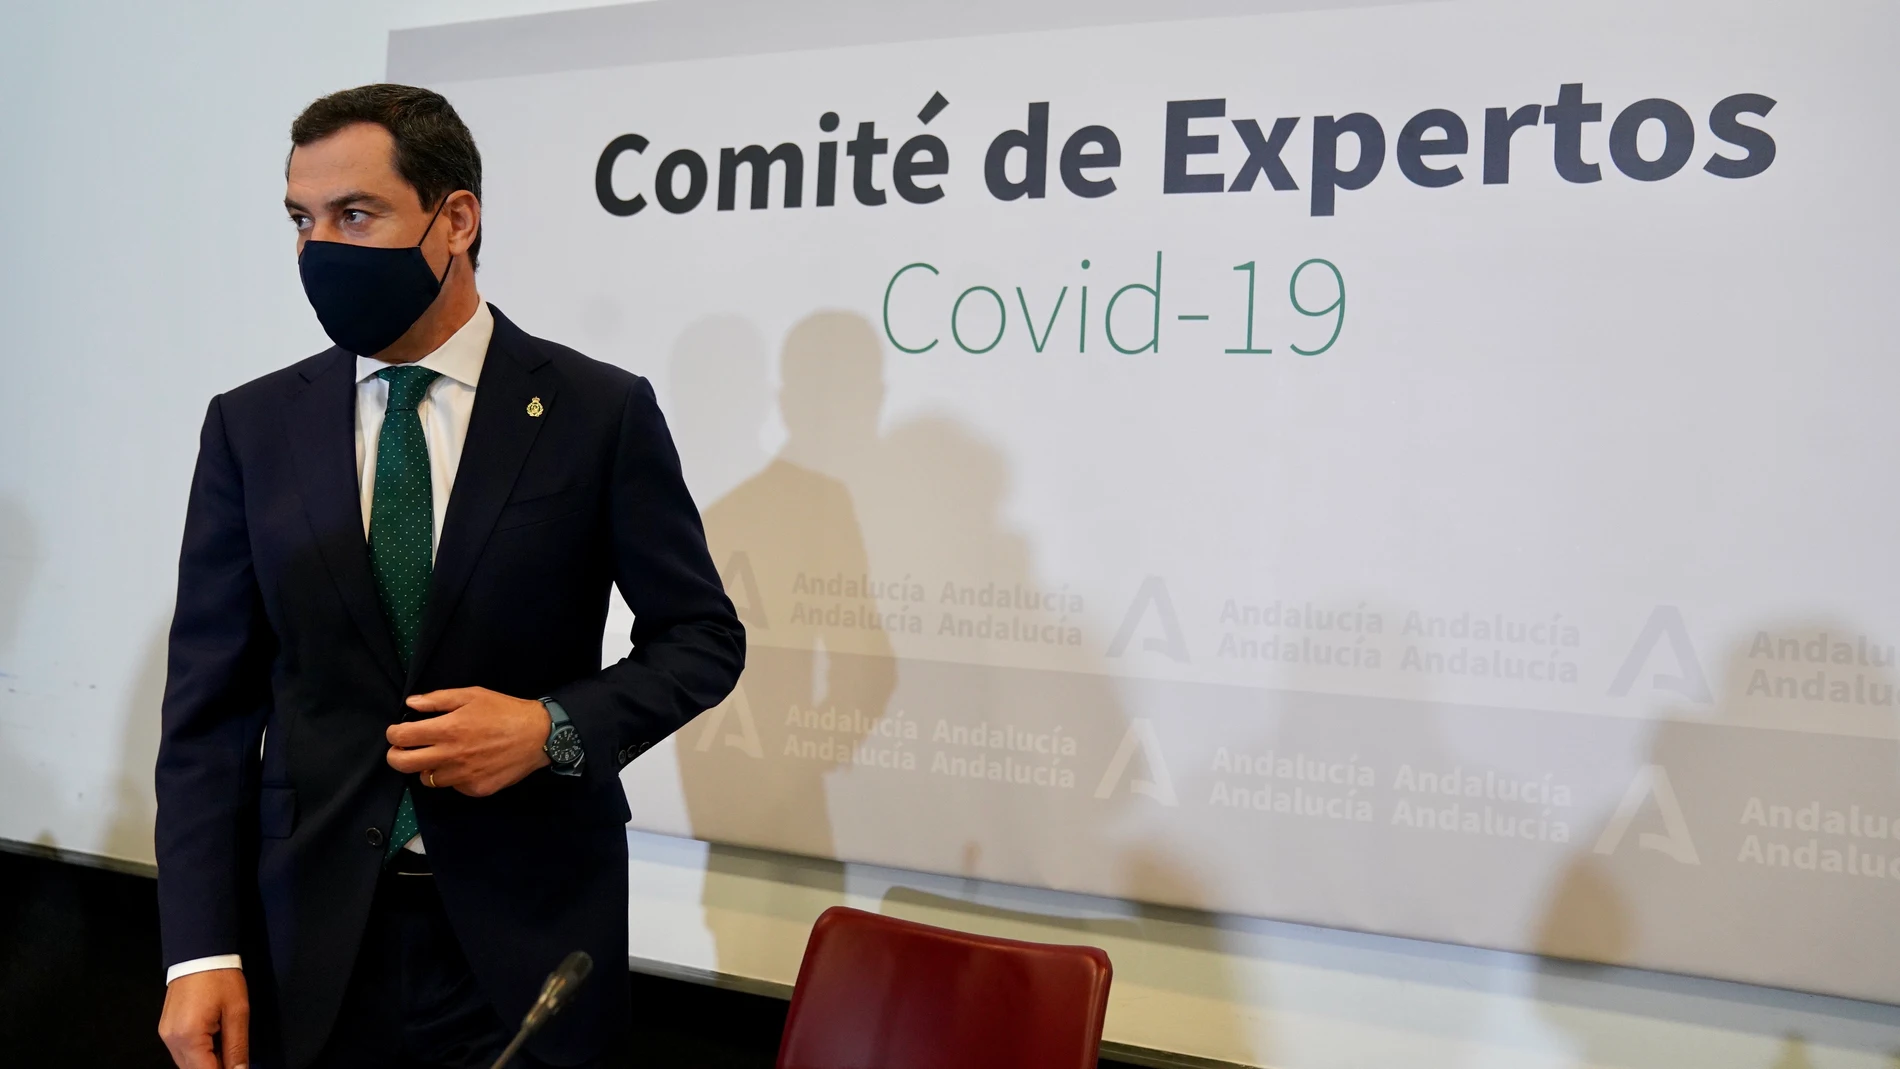 El presidente de la Junta de Andalucía, Juanma Moreno, preside la reunión del Comité de Expertos de COVID-19 pdonde se han decidido las nuevas medidas que aplicará la Junta de Andalucía en la lucha contra la pandemia.